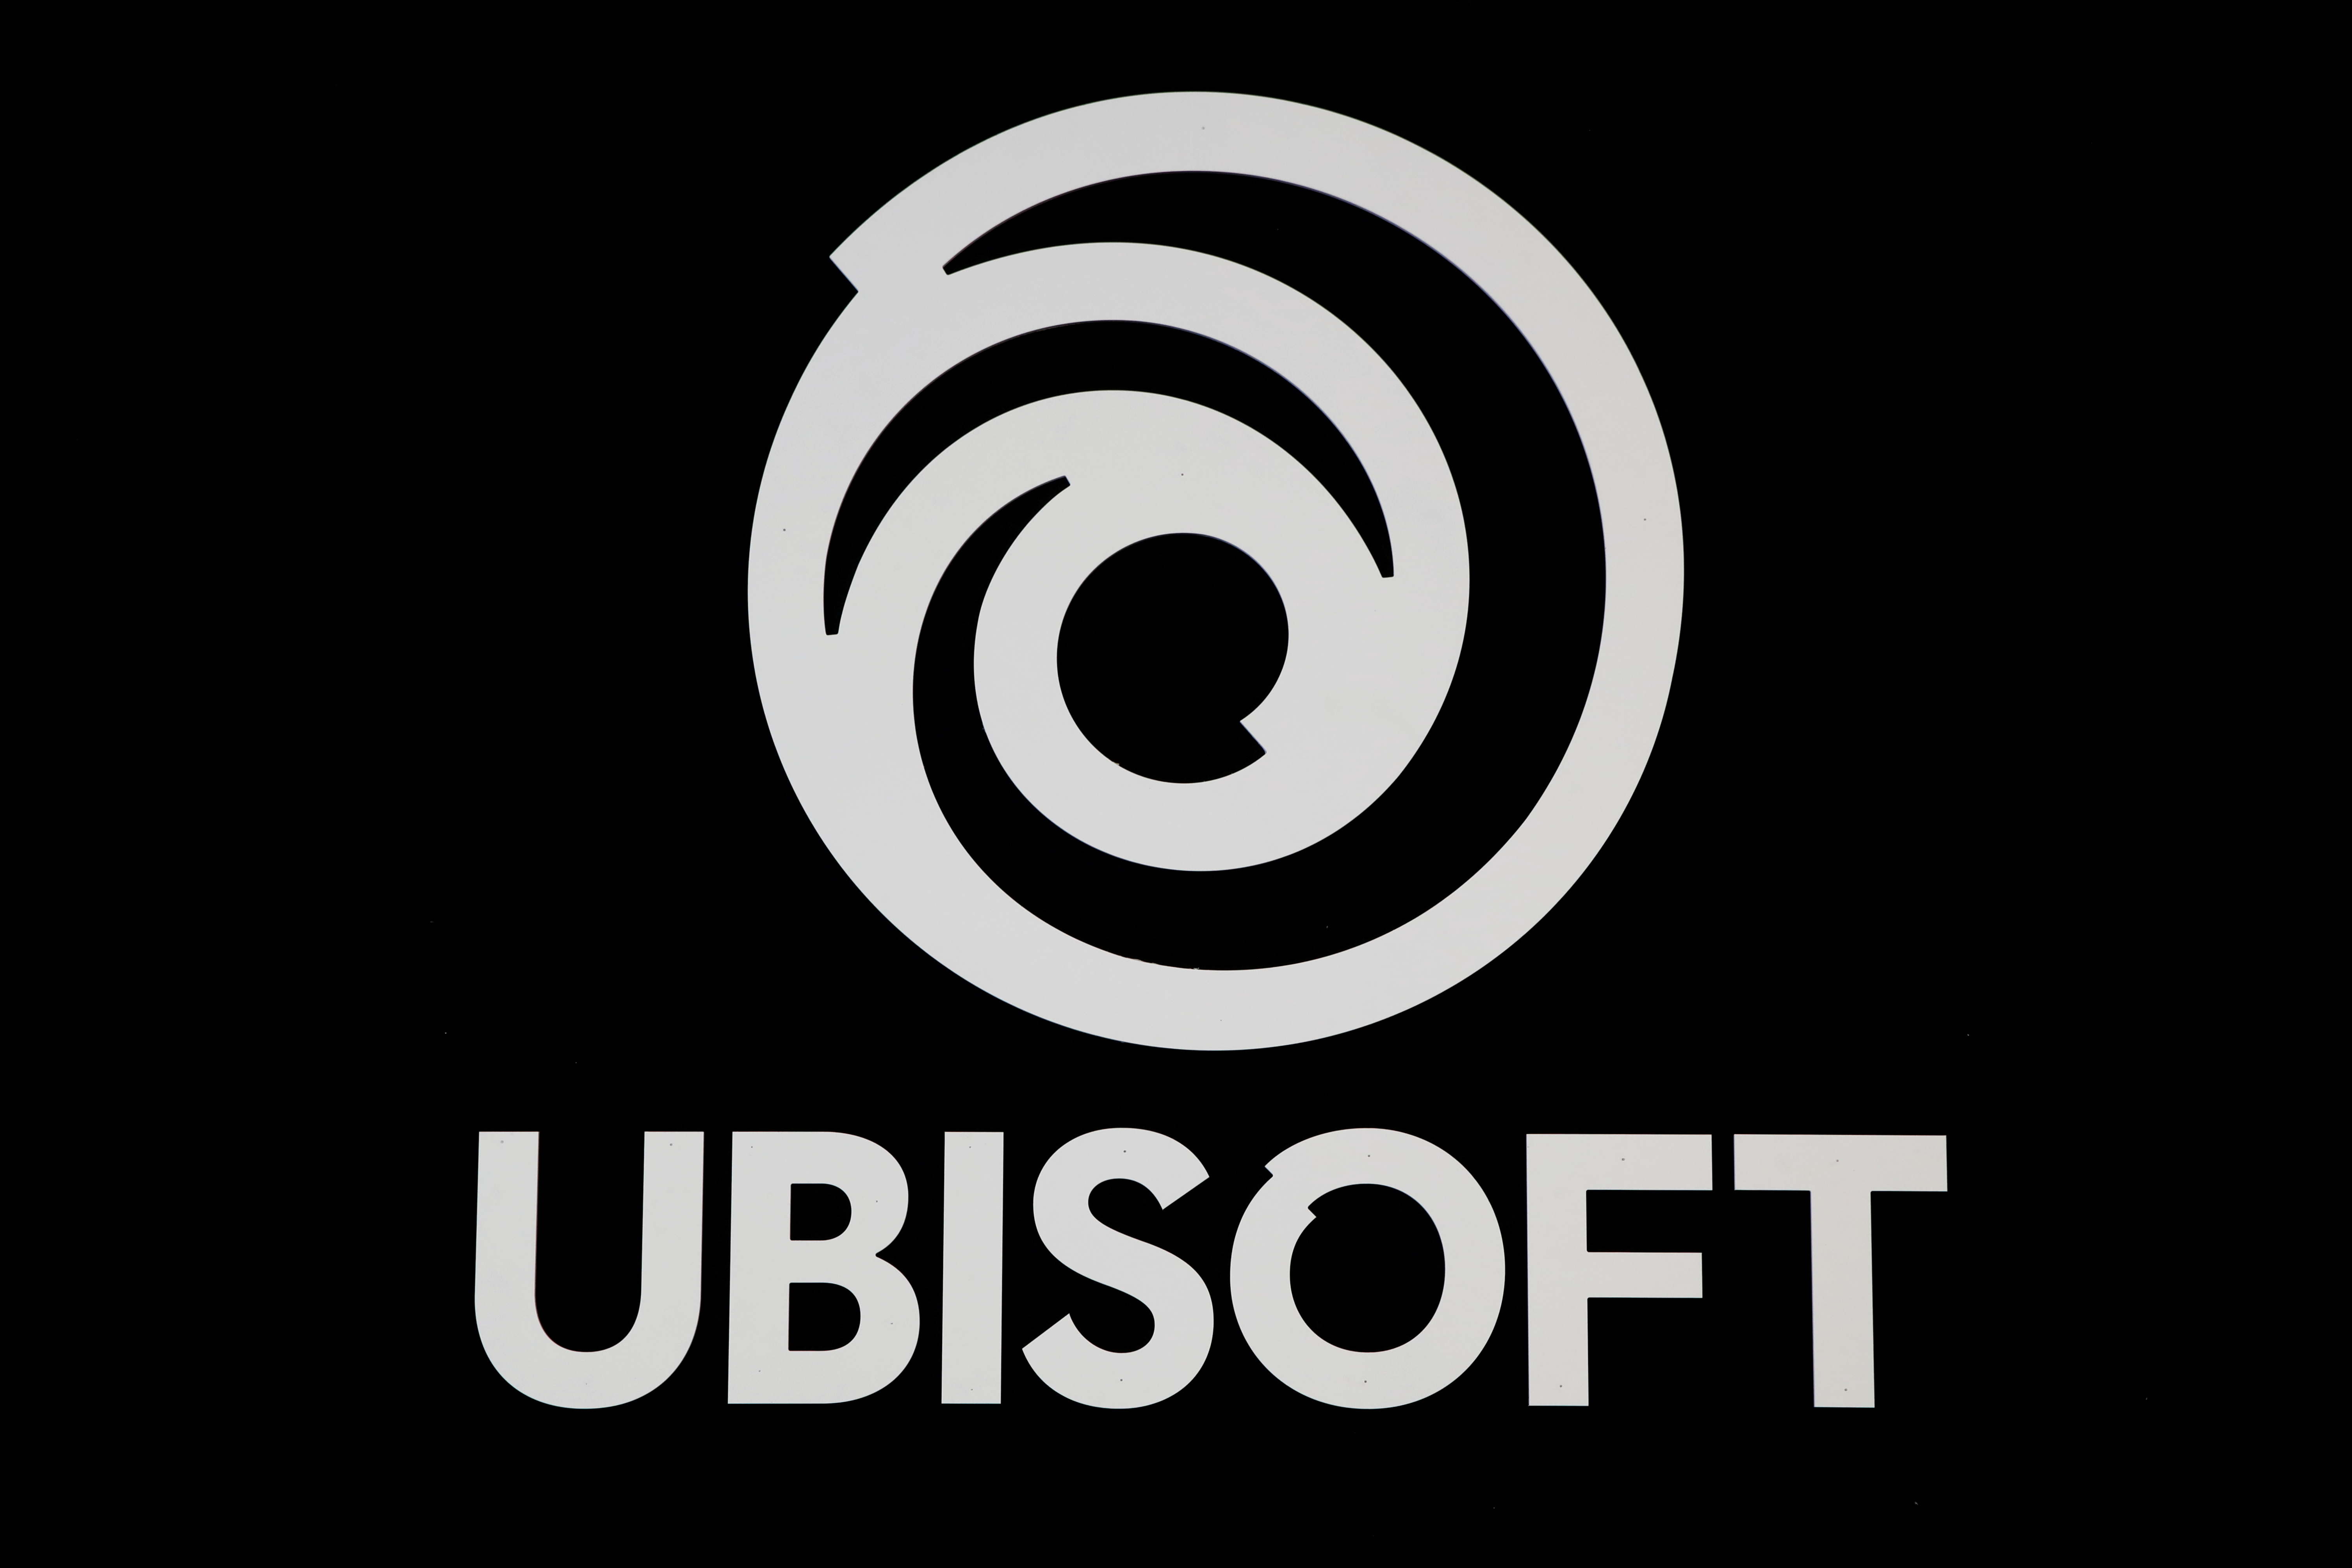 Ubisoft game